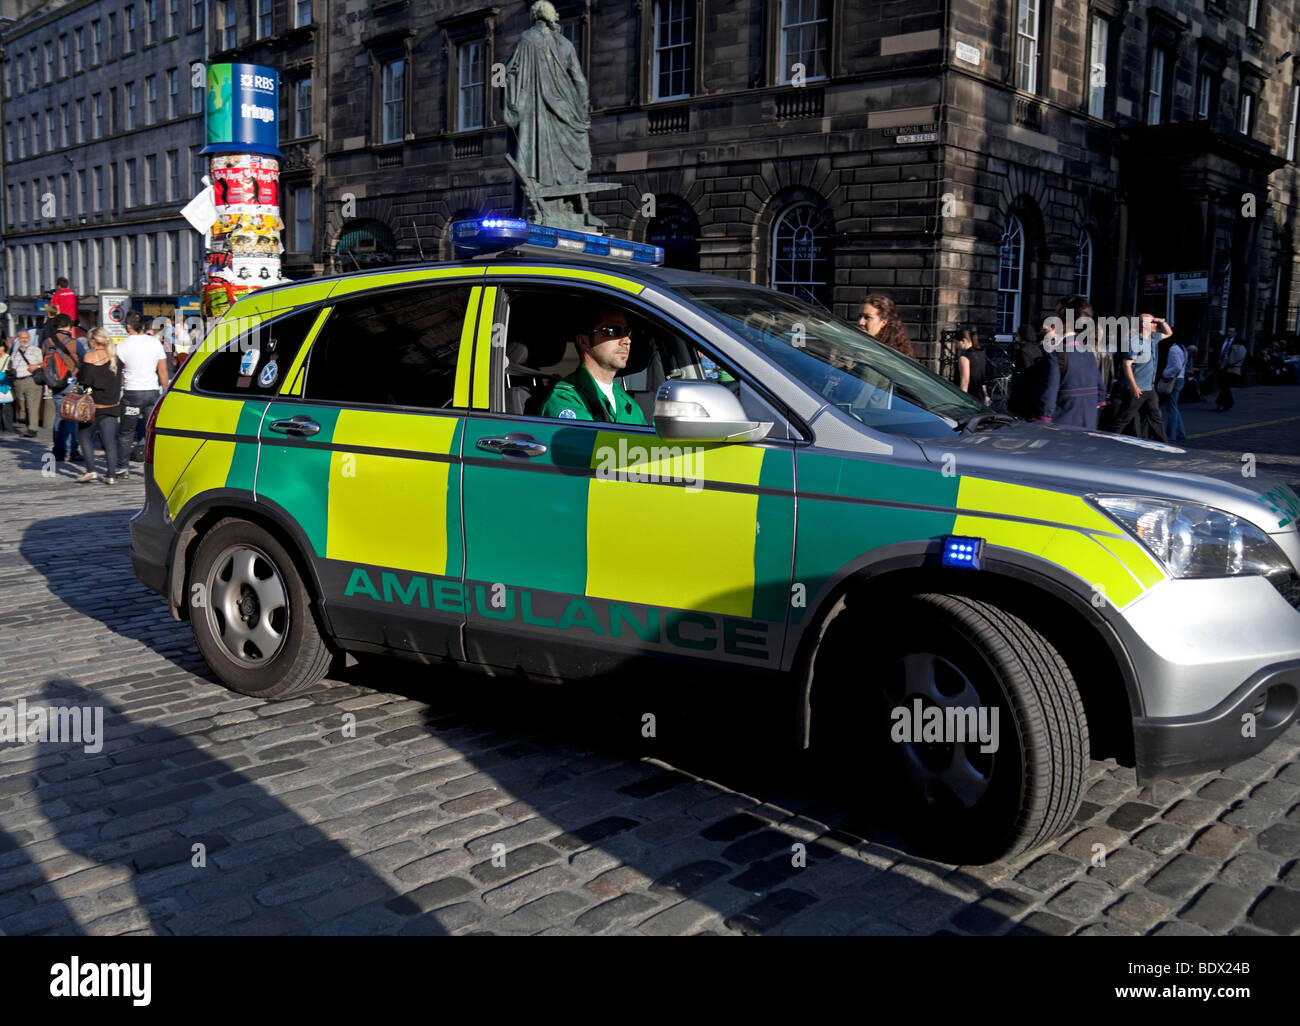 Ambulance vehicle with flashing emergency blue lights Edinburgh Scotland Stock Photo